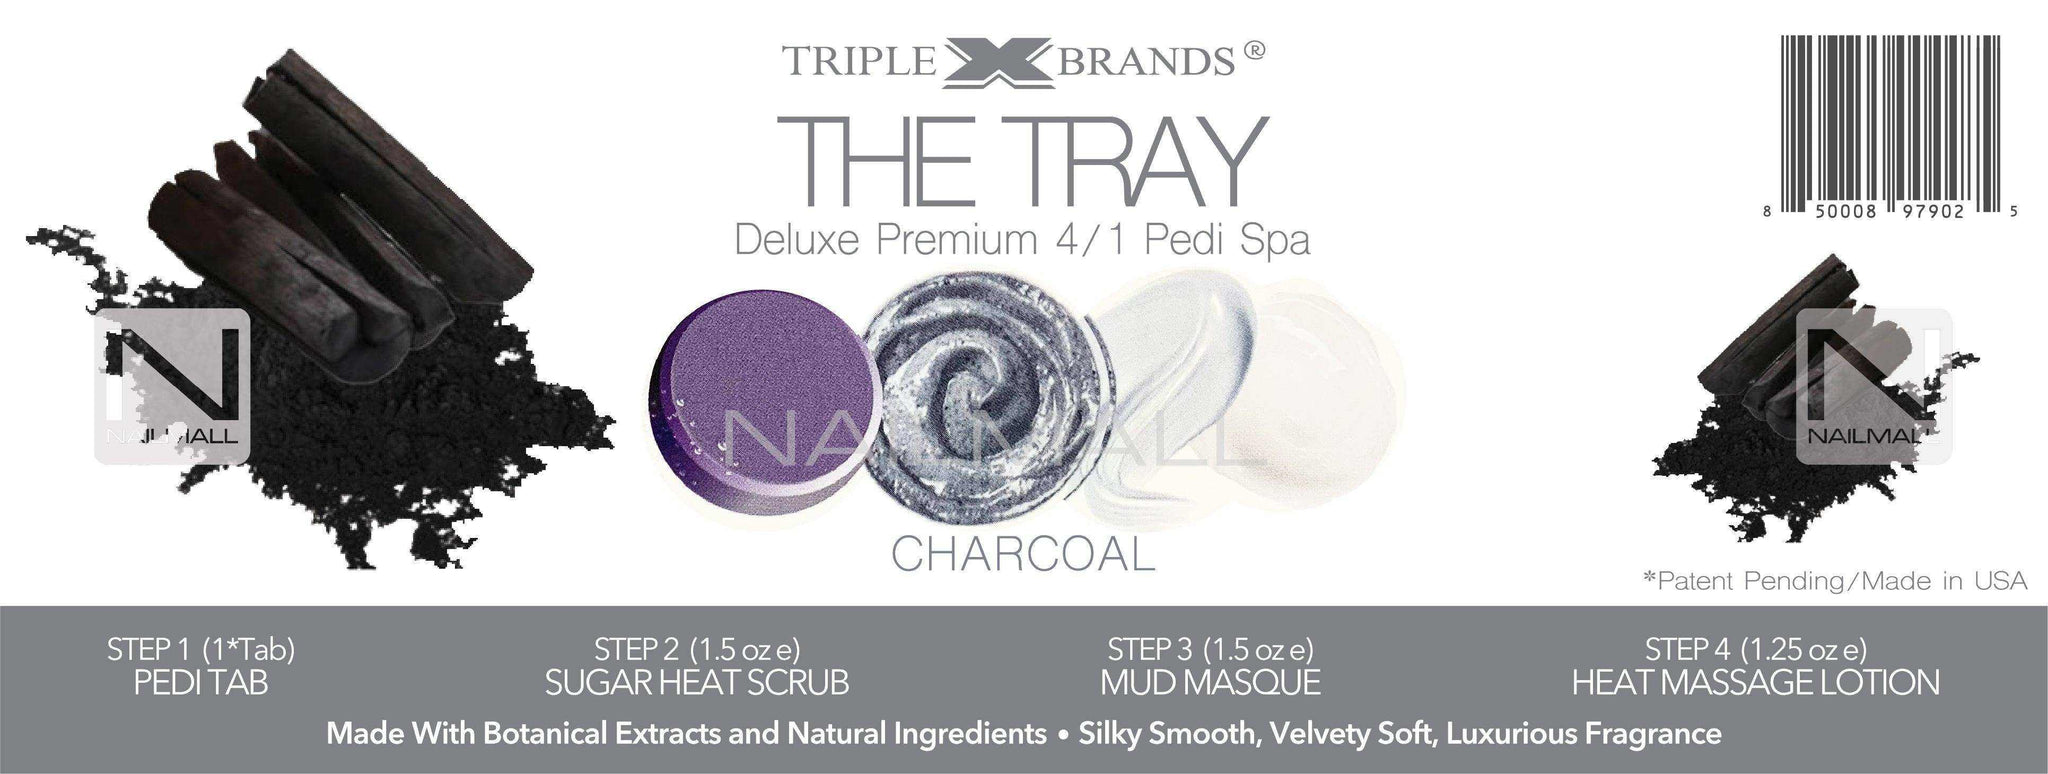 Triple X Brands 4/1 Pedi Spa Tray - Charcoal 54pc